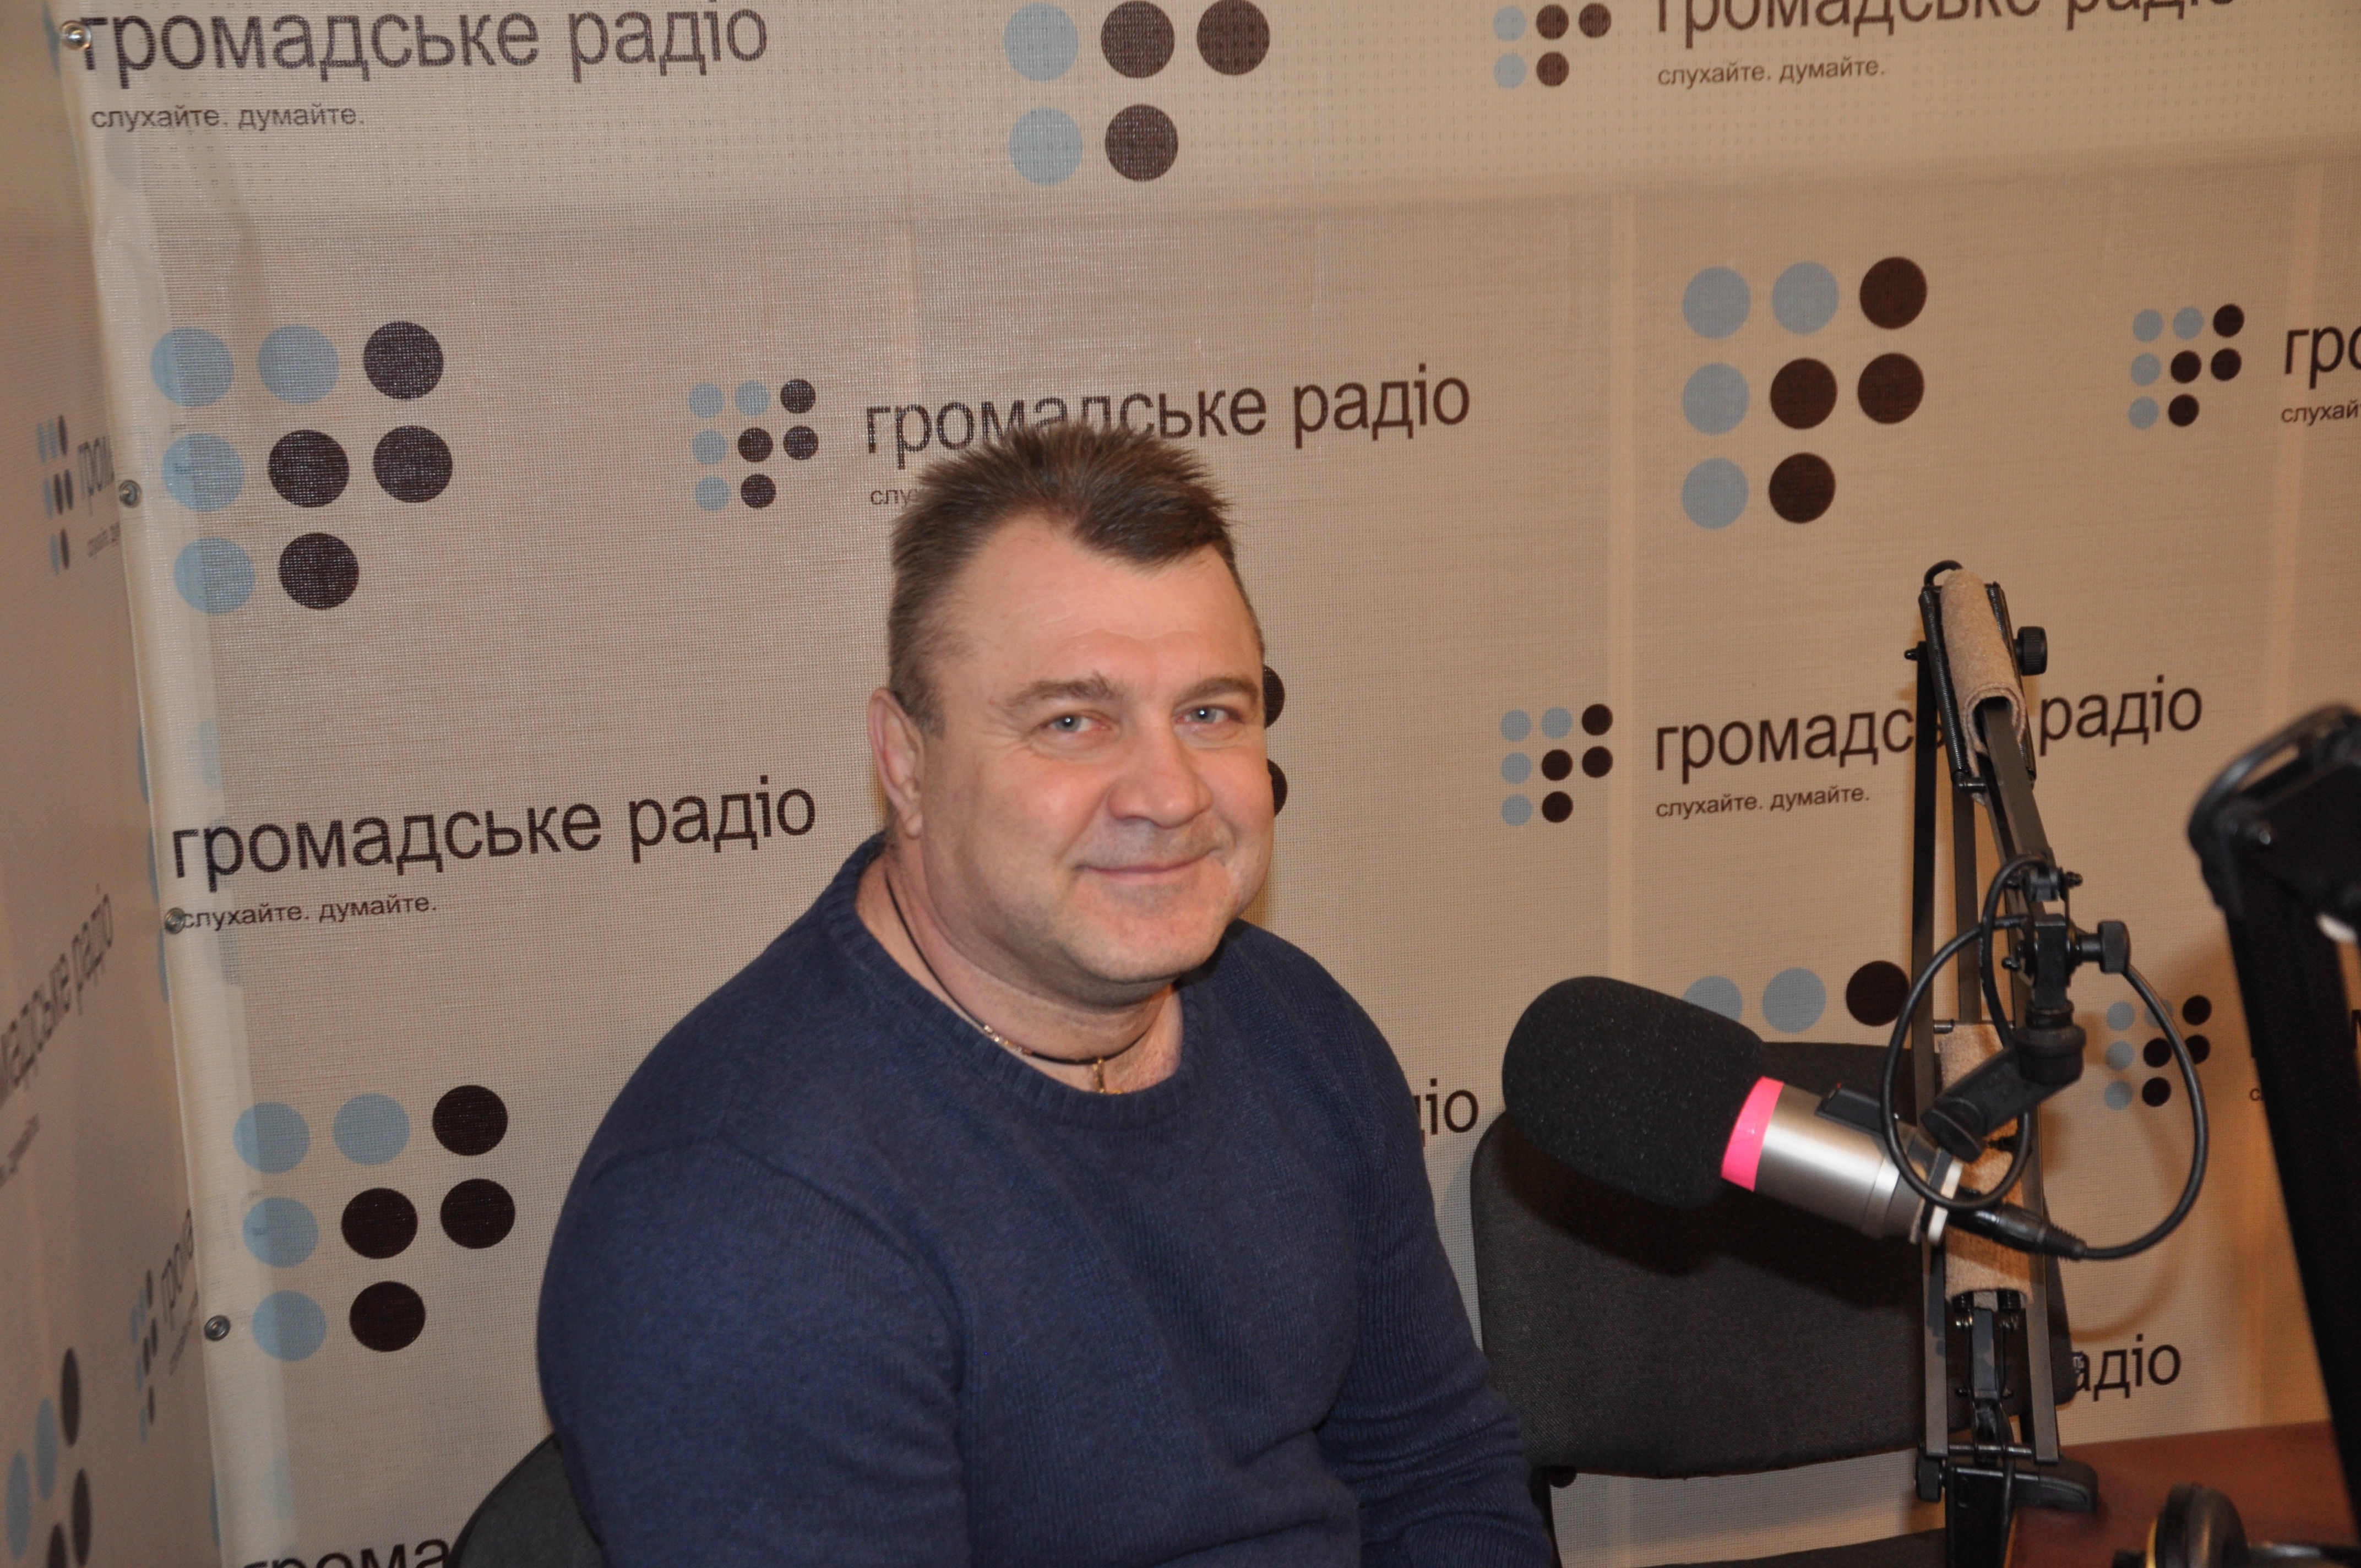 Активист из Луганска Игорь Чудовский: у меня есть план — не надо лить кровь